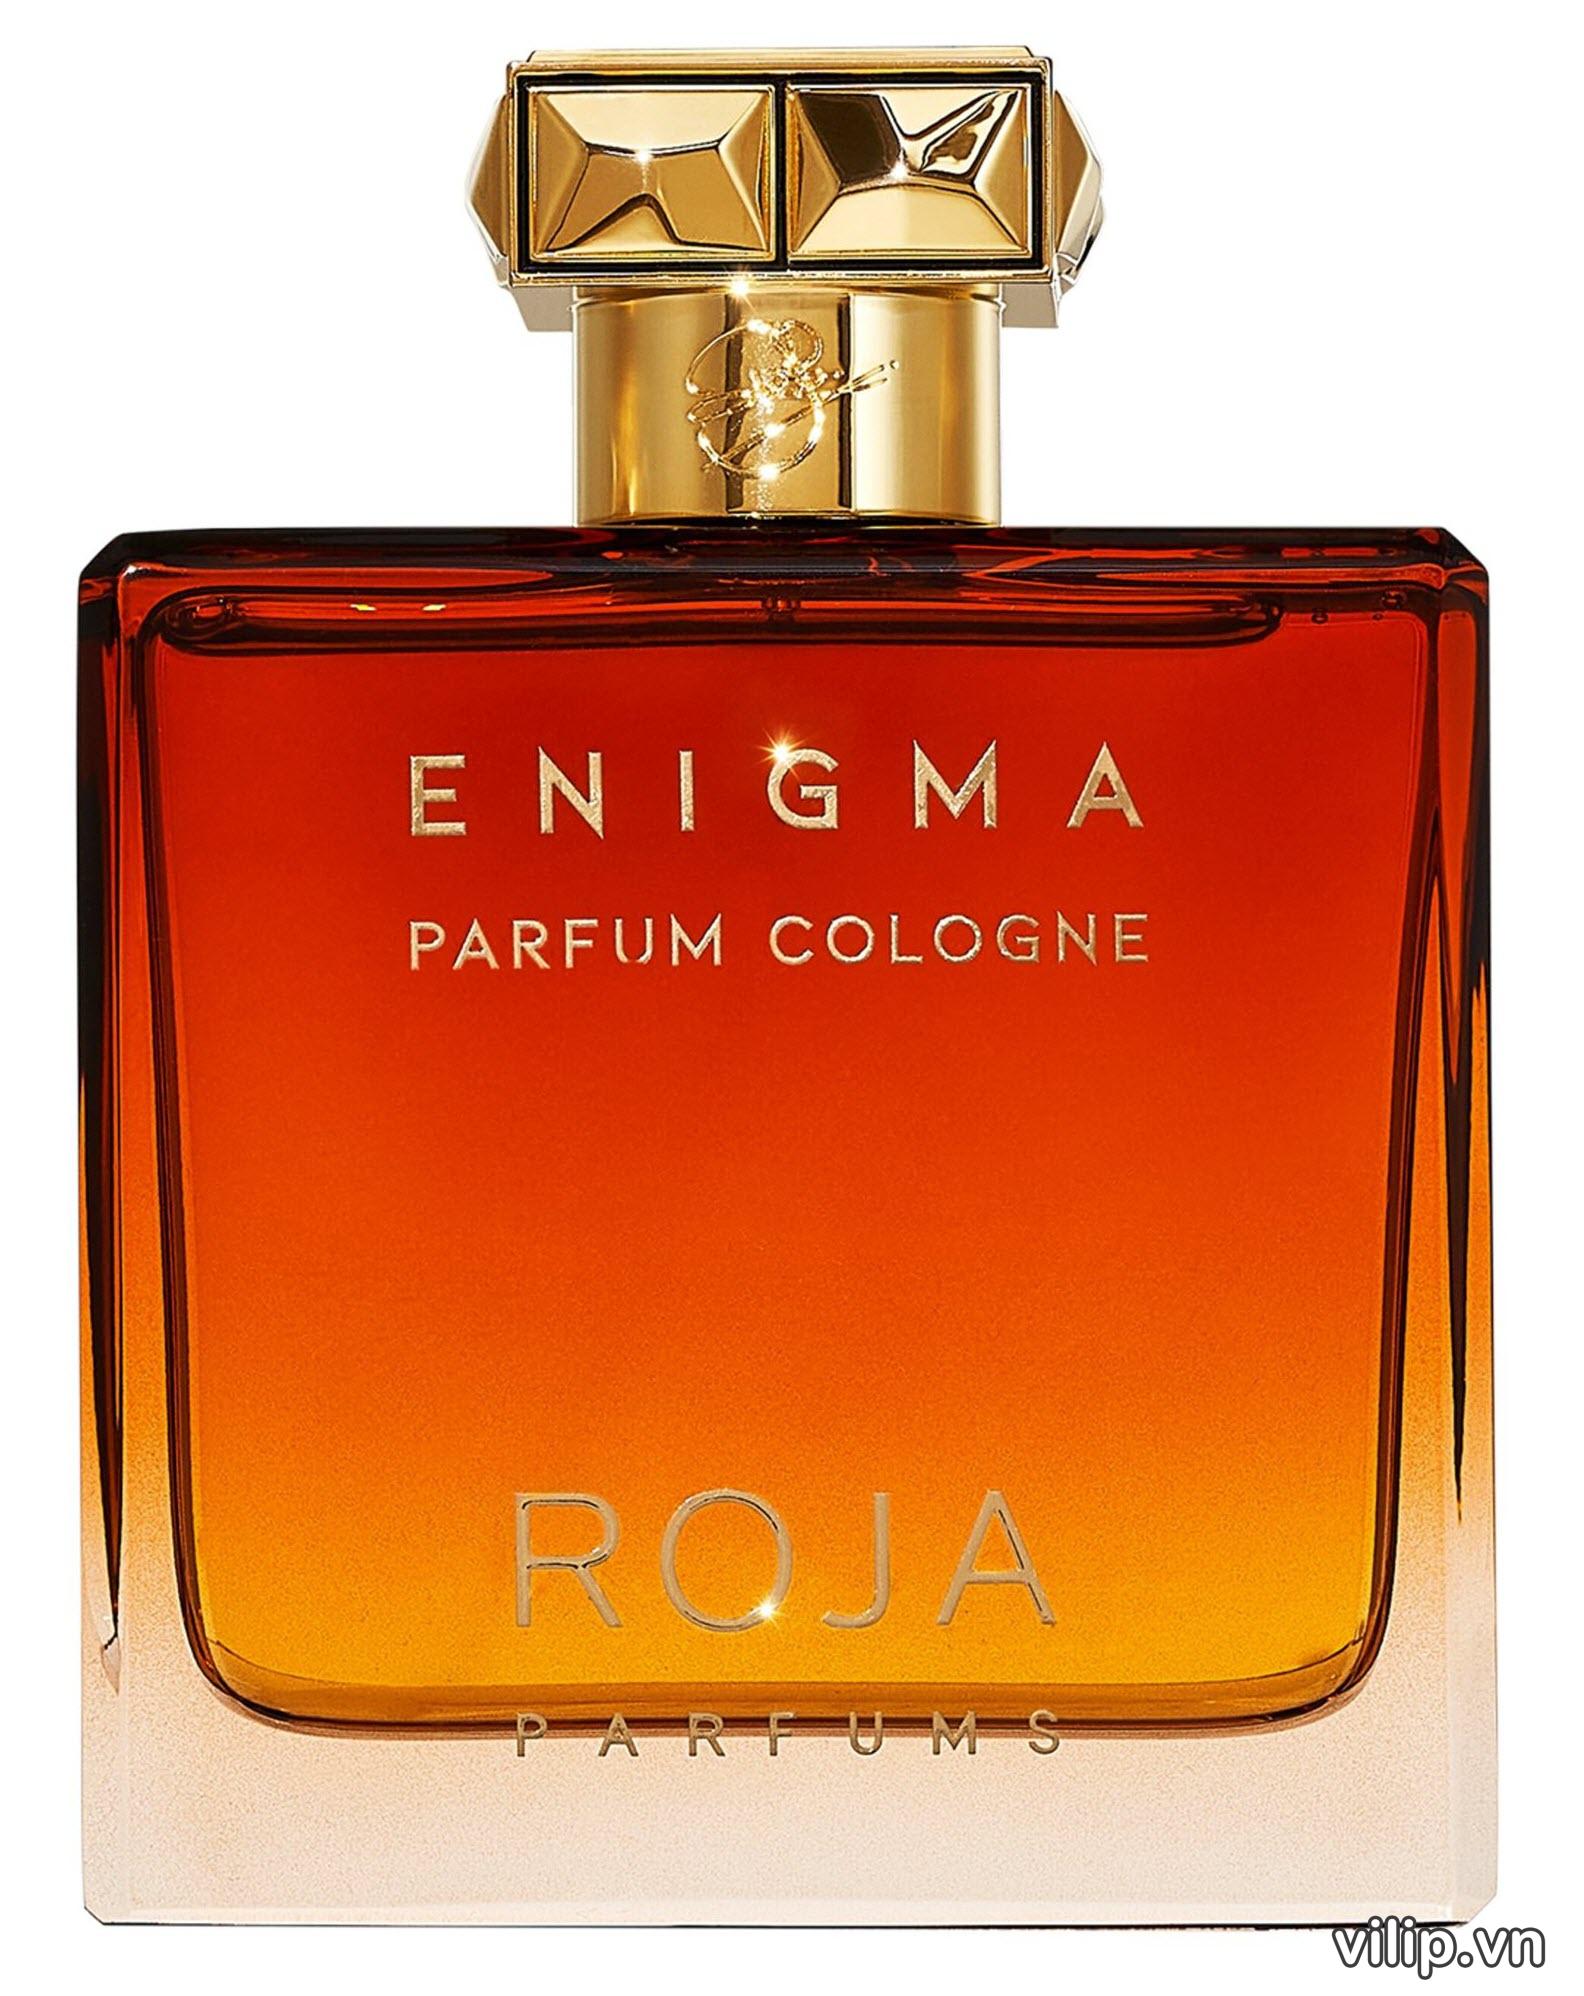 Nuoc Hoa Nam Roja Parfums Enigma Parfum Cologne 10